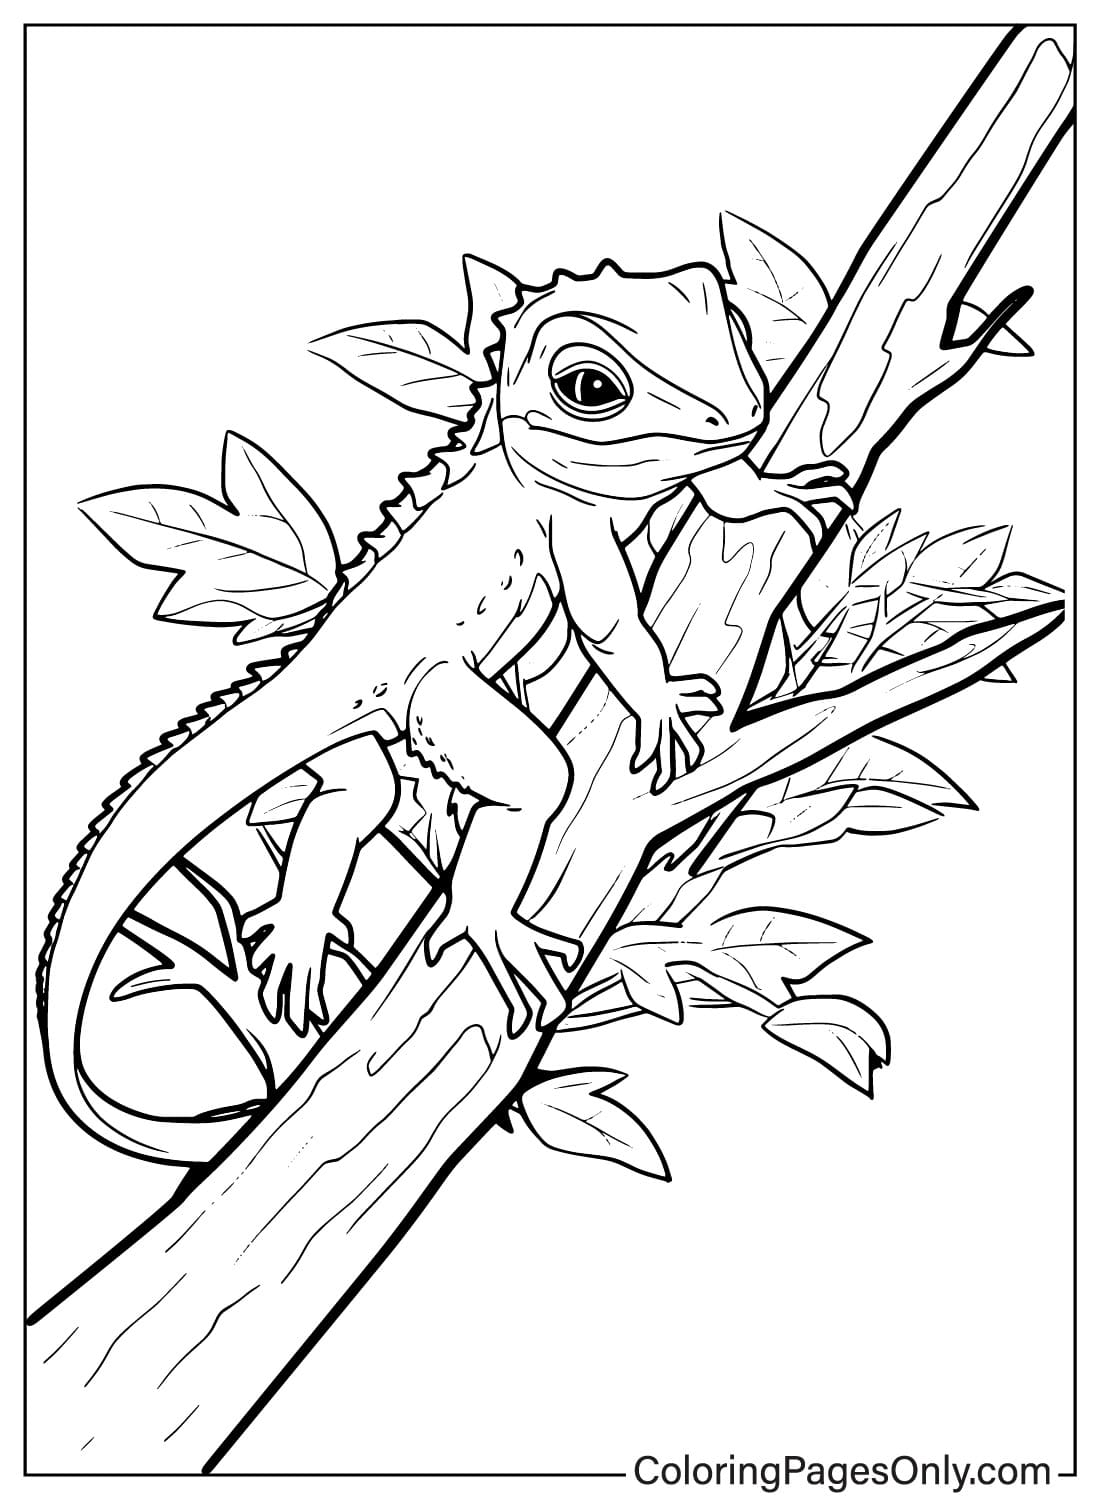 Página para colorir para imprimir de lagarto